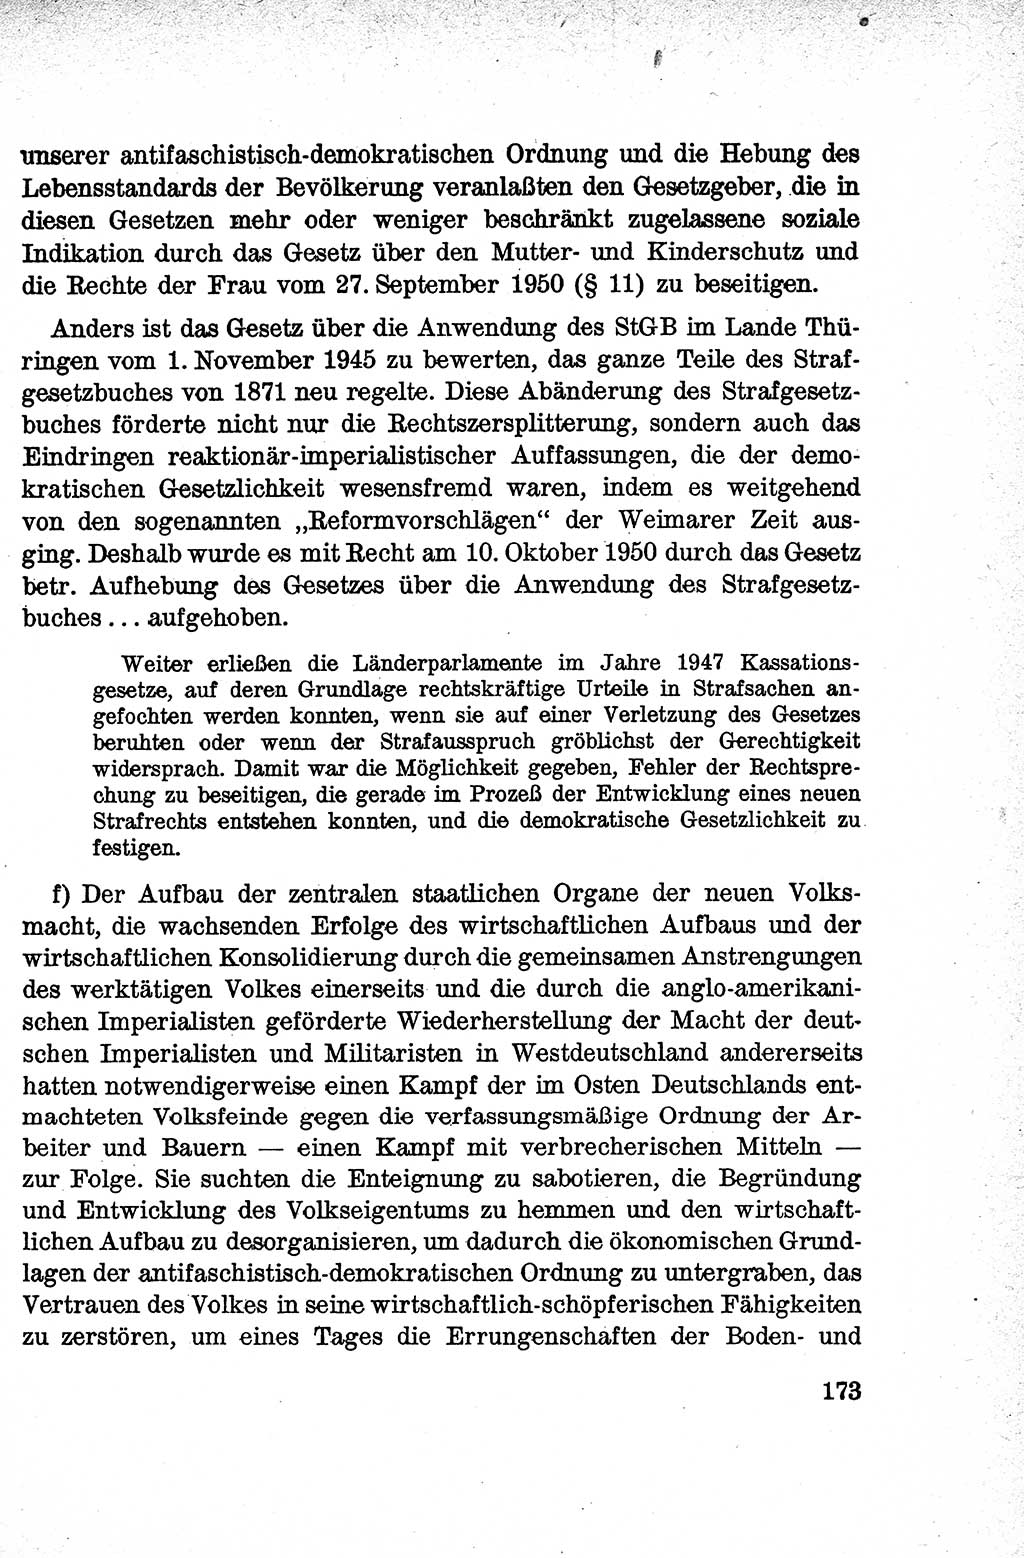 Lehrbuch des Strafrechts der Deutschen Demokratischen Republik (DDR), Allgemeiner Teil 1959, Seite 173 (Lb. Strafr. DDR AT 1959, S. 173)